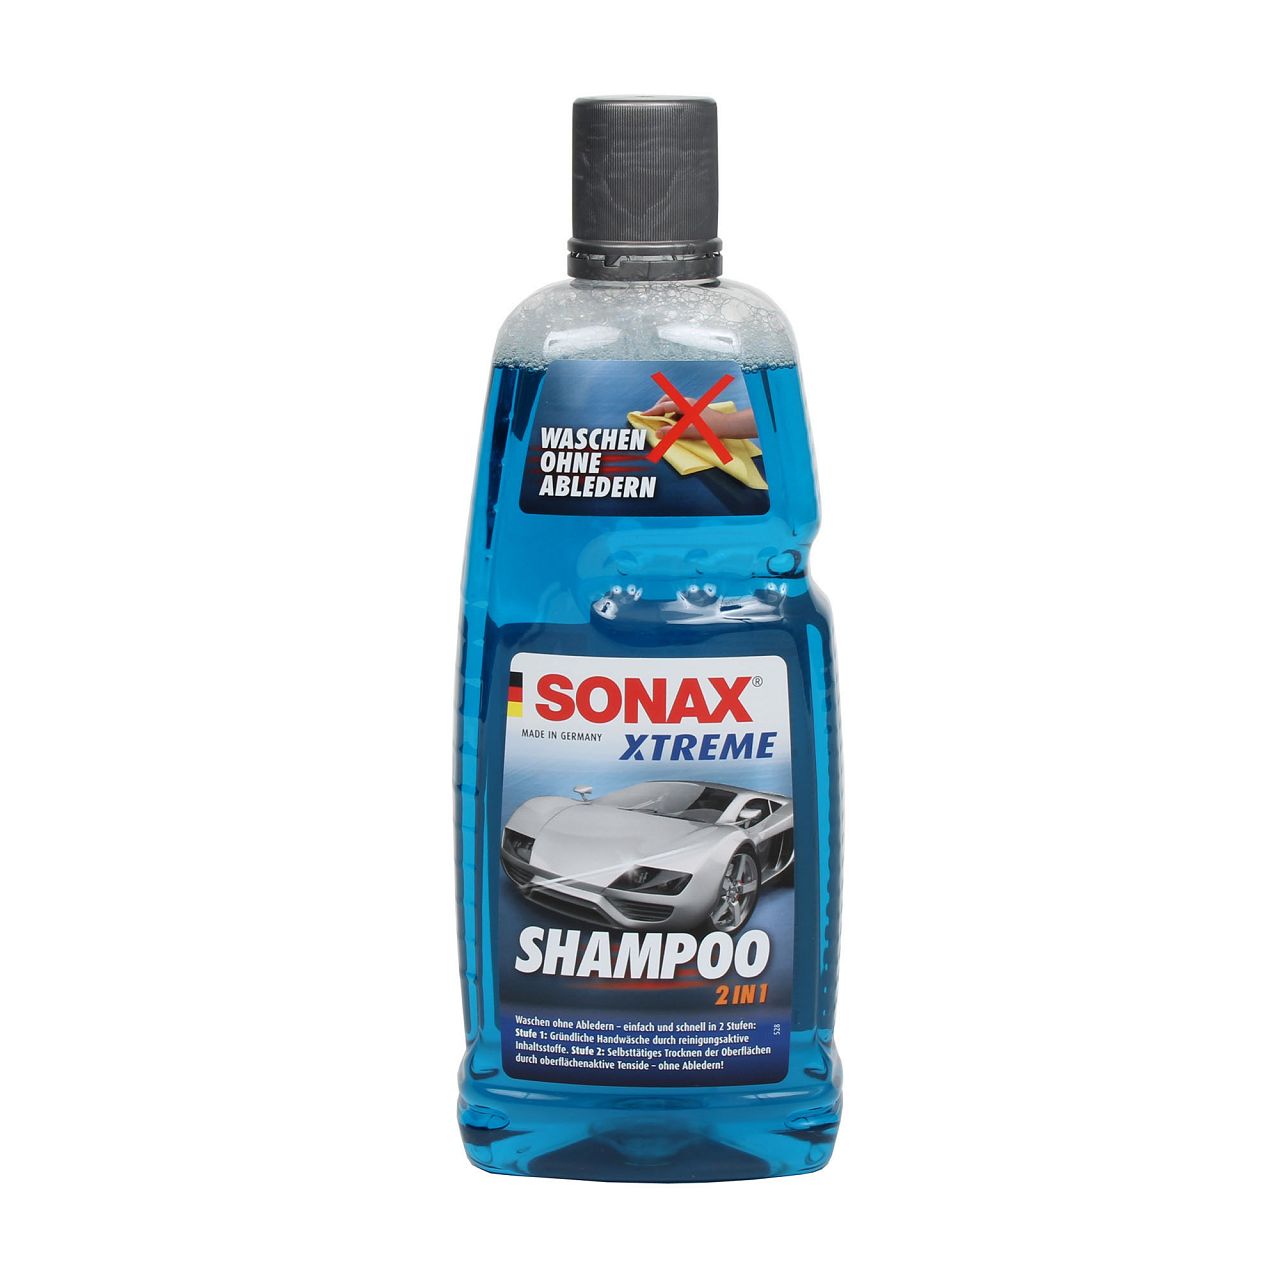 SONAX Autoshampoo 2 IN 1 + Scheibenreiniger + POLISH & WX 3 + Poliertücher